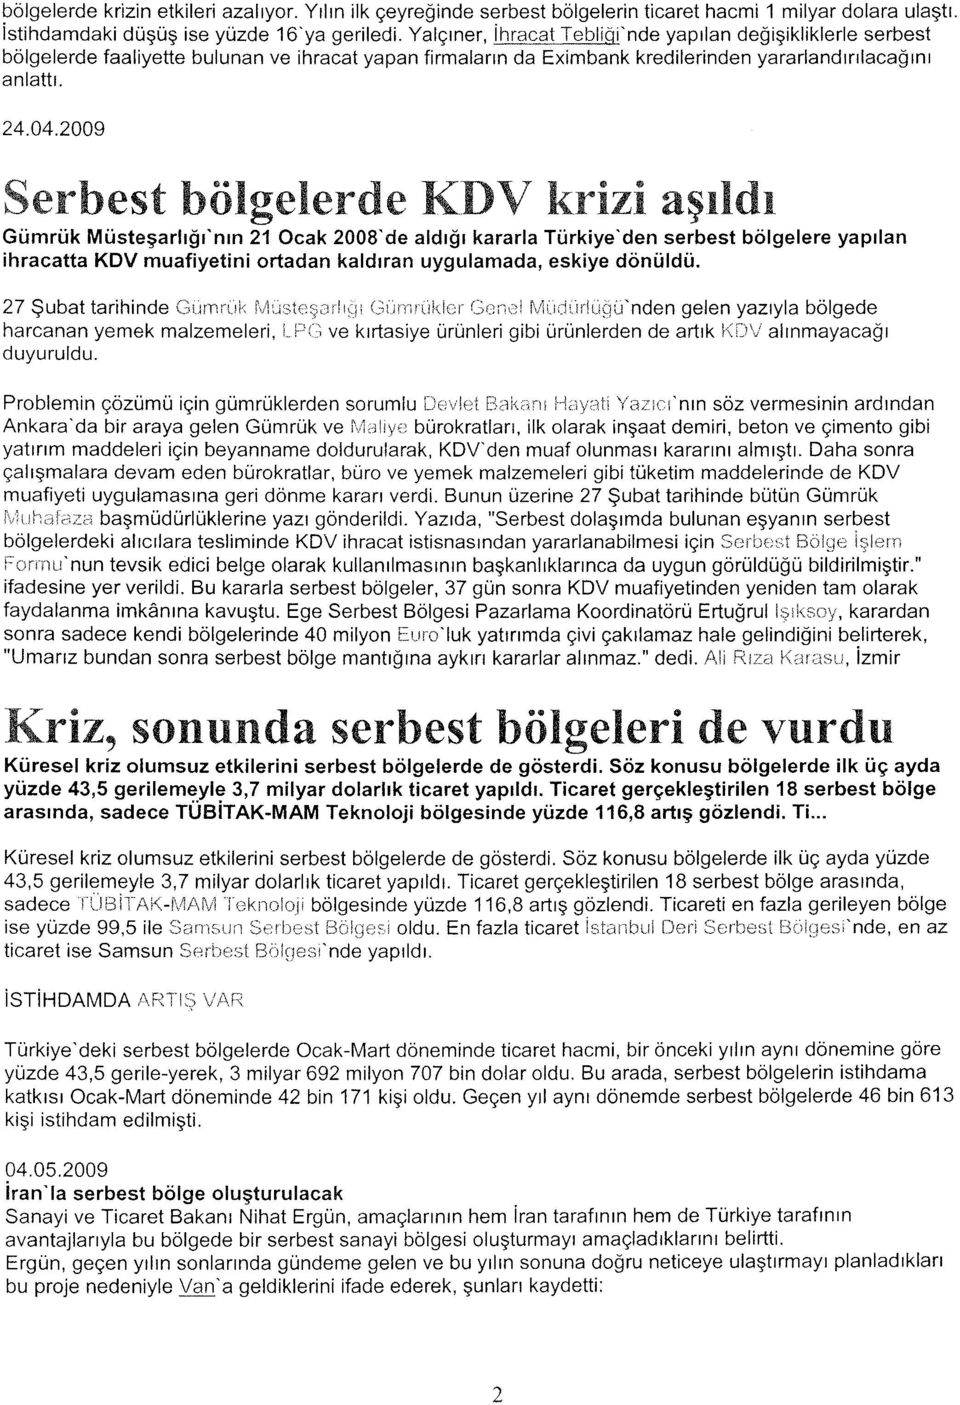 2009 Serbest bölgelerde l(dv krizi aşıldı Gümrük Müsteşarlığı'nın 21 Ocak 2008'de aldığı kararla Türkiye'den serbest bölgelere yapılan ihracatta KDV muafiyetini ortadan kaldıran uygulamada, eskiye